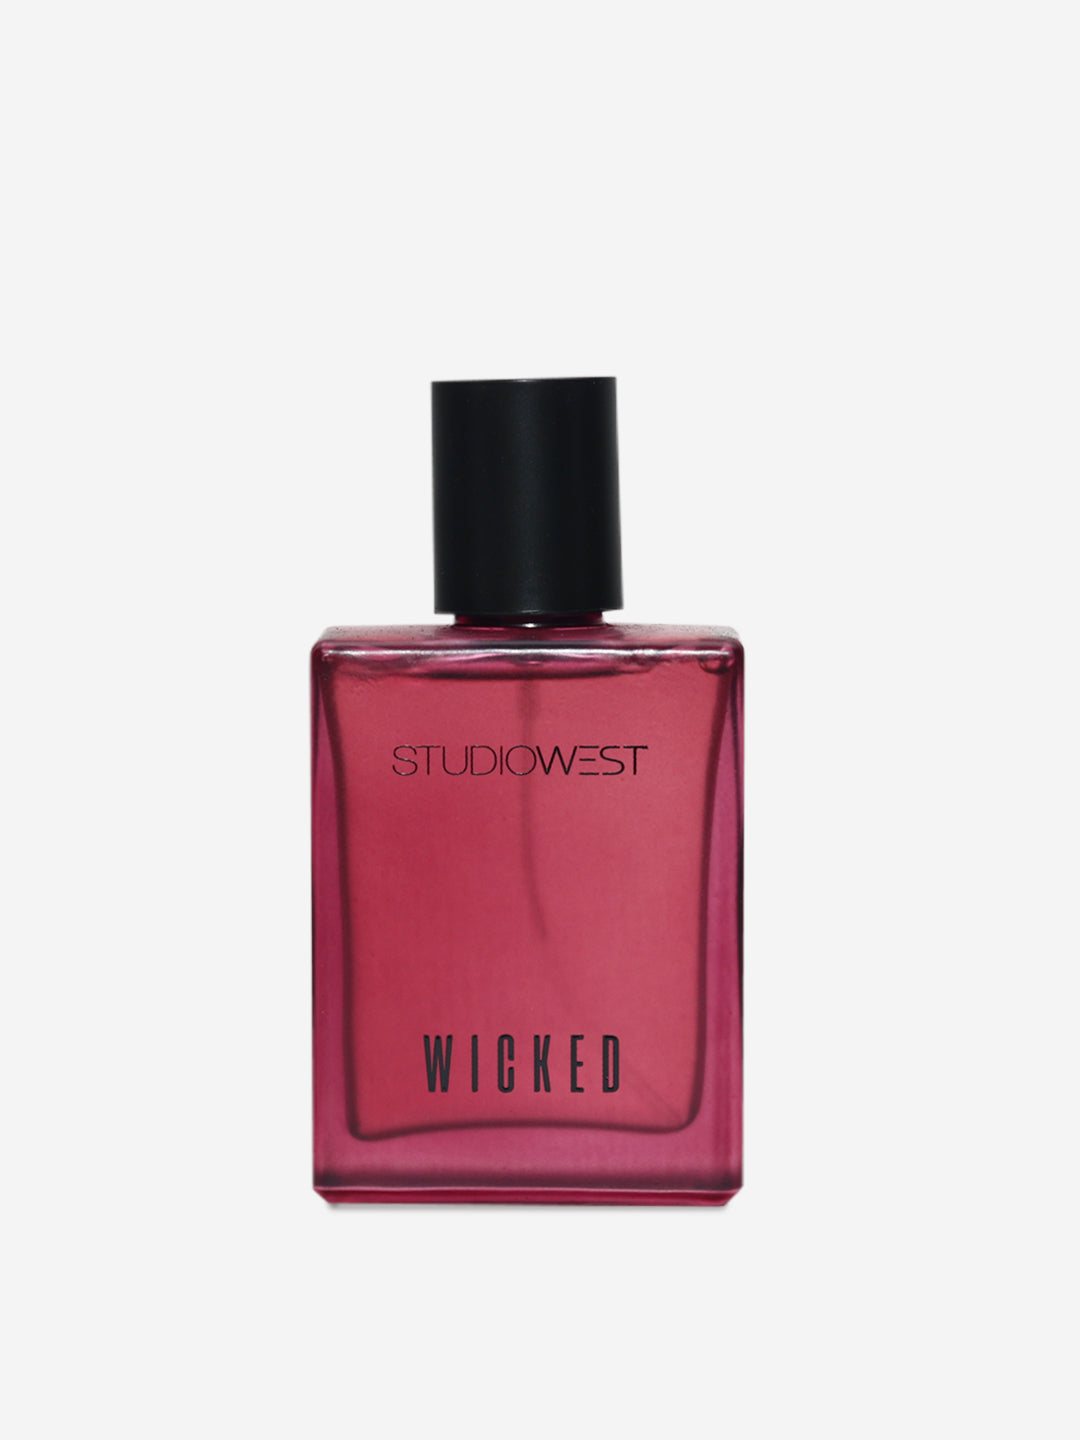 Studiowest Wicked Eau de Parfum For Women - 50ml